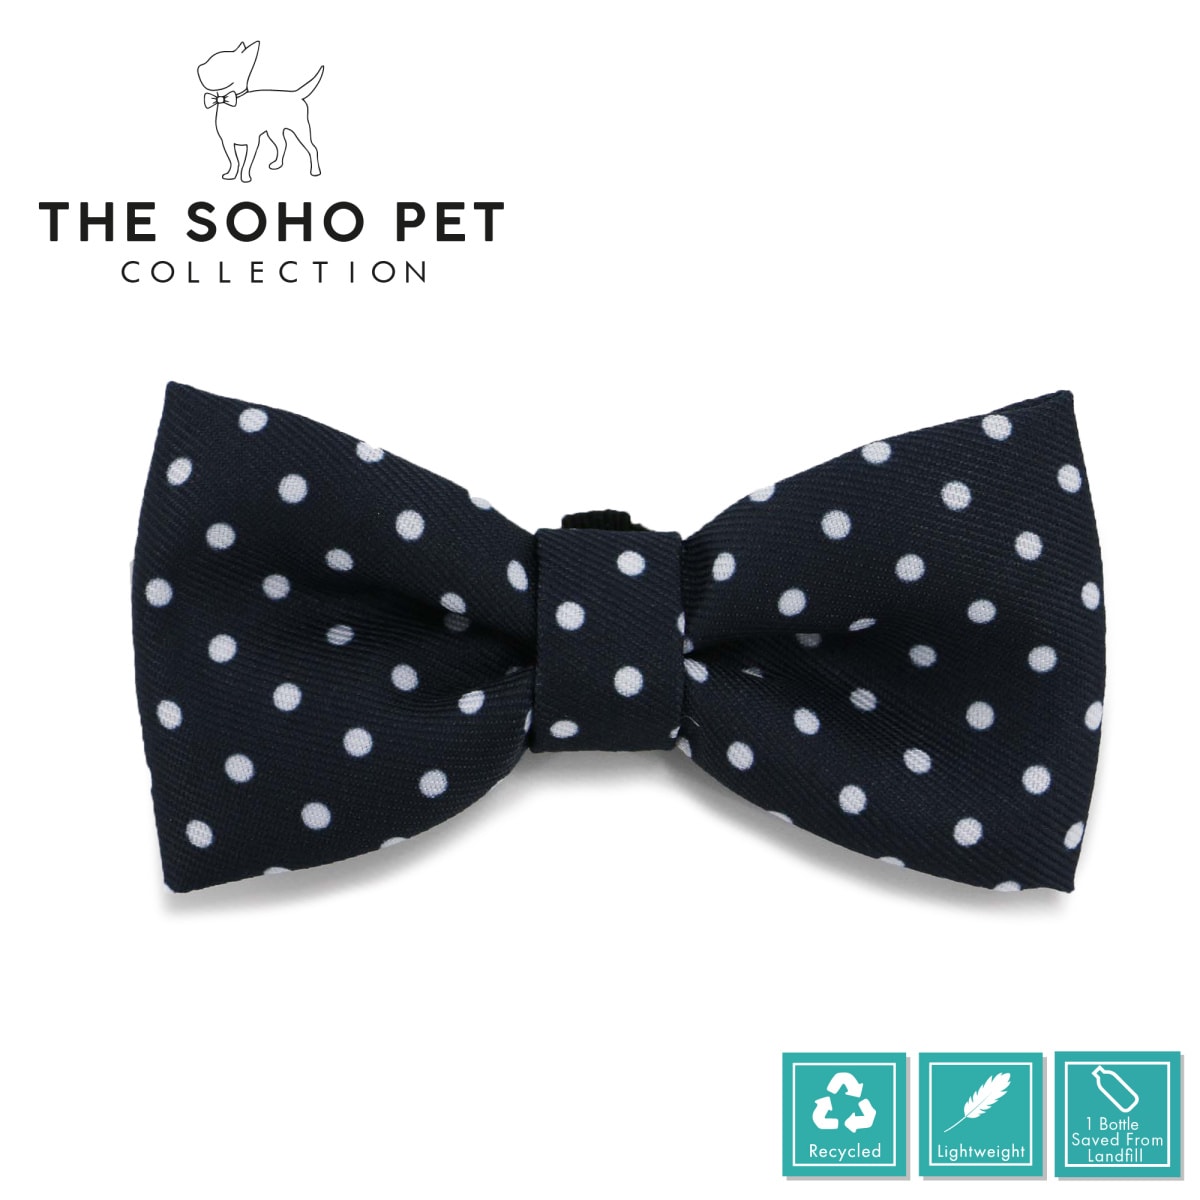 Soho Collection - Daisy / Polka Dot Bow Tie Main Image